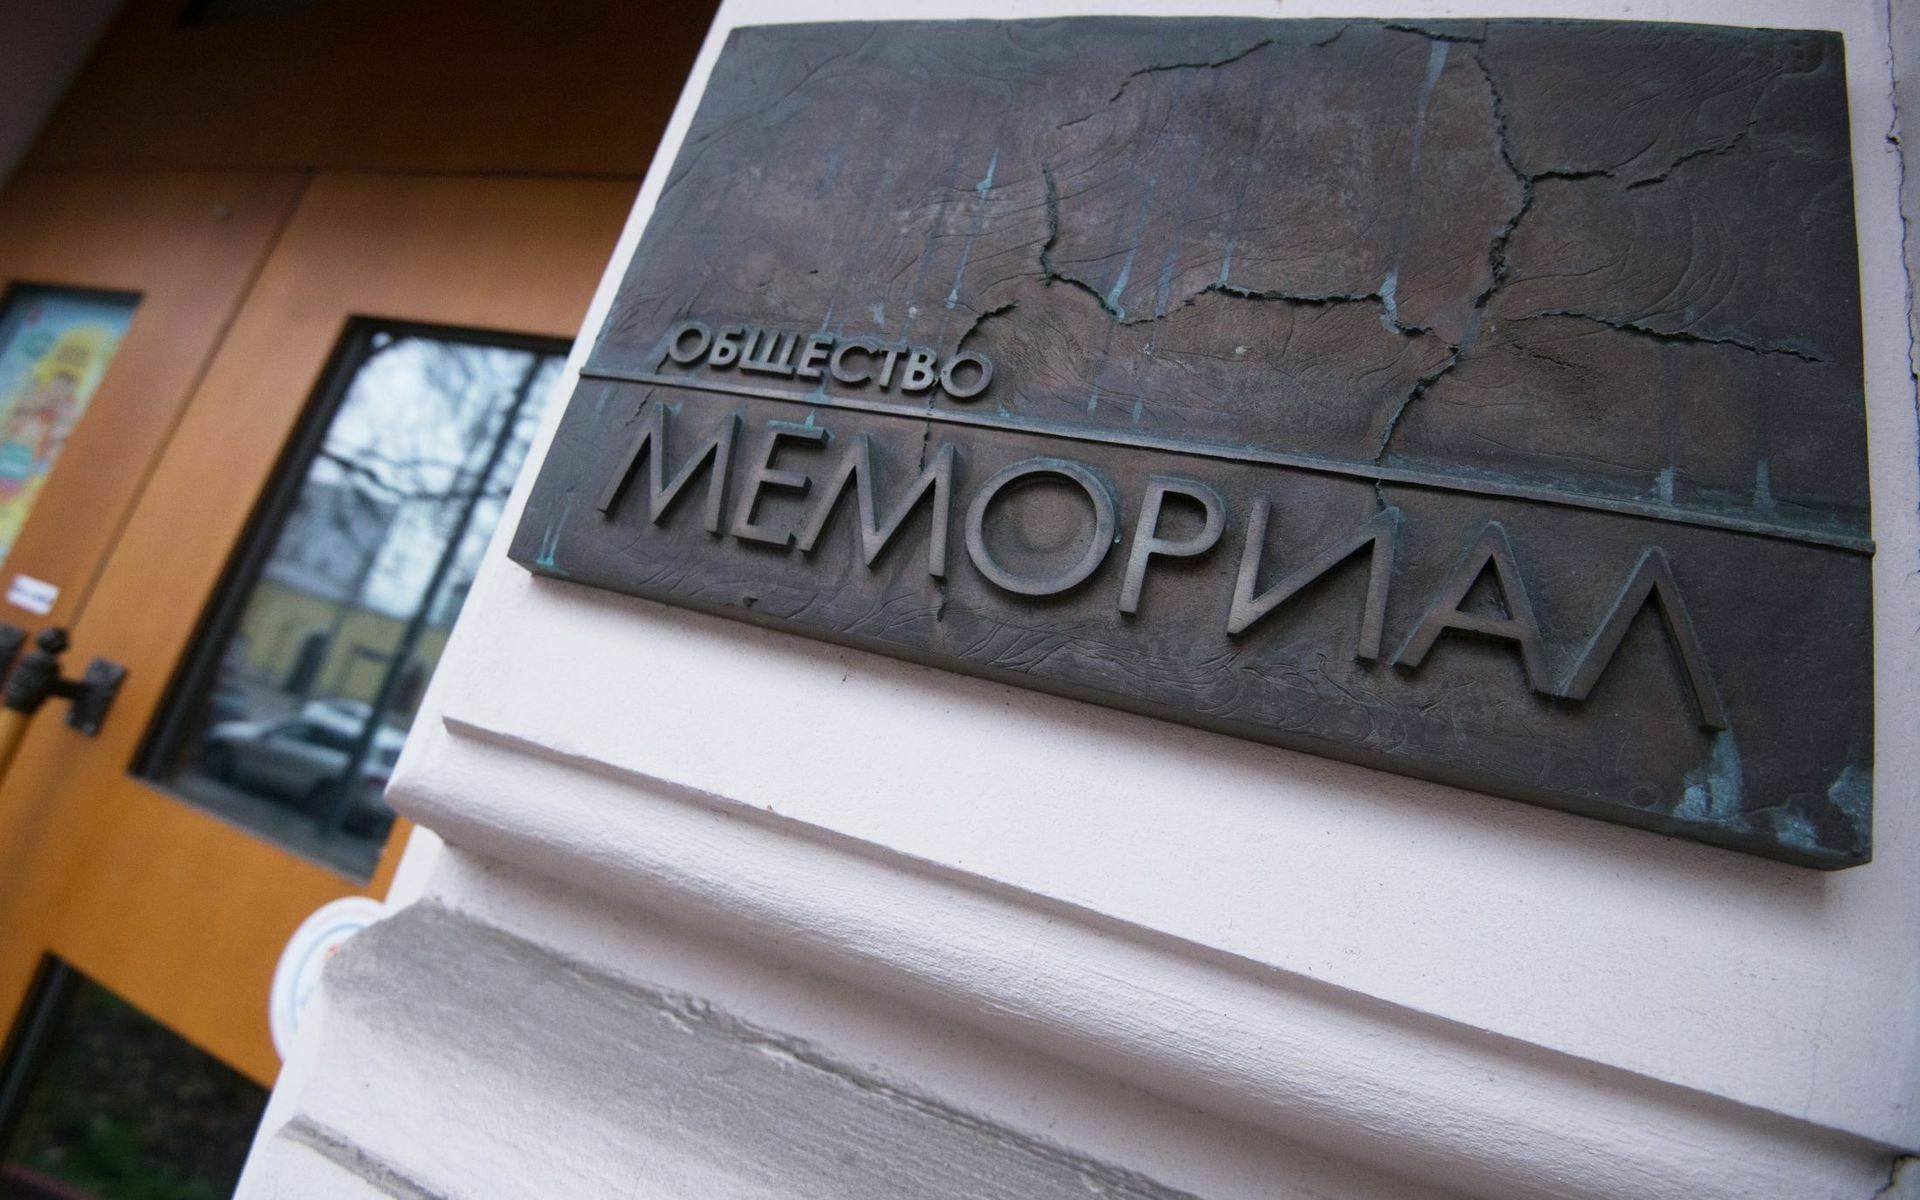 «Мемориал*» исключил из списков жертв репрессий тех, кто сотрудничал с нацистами